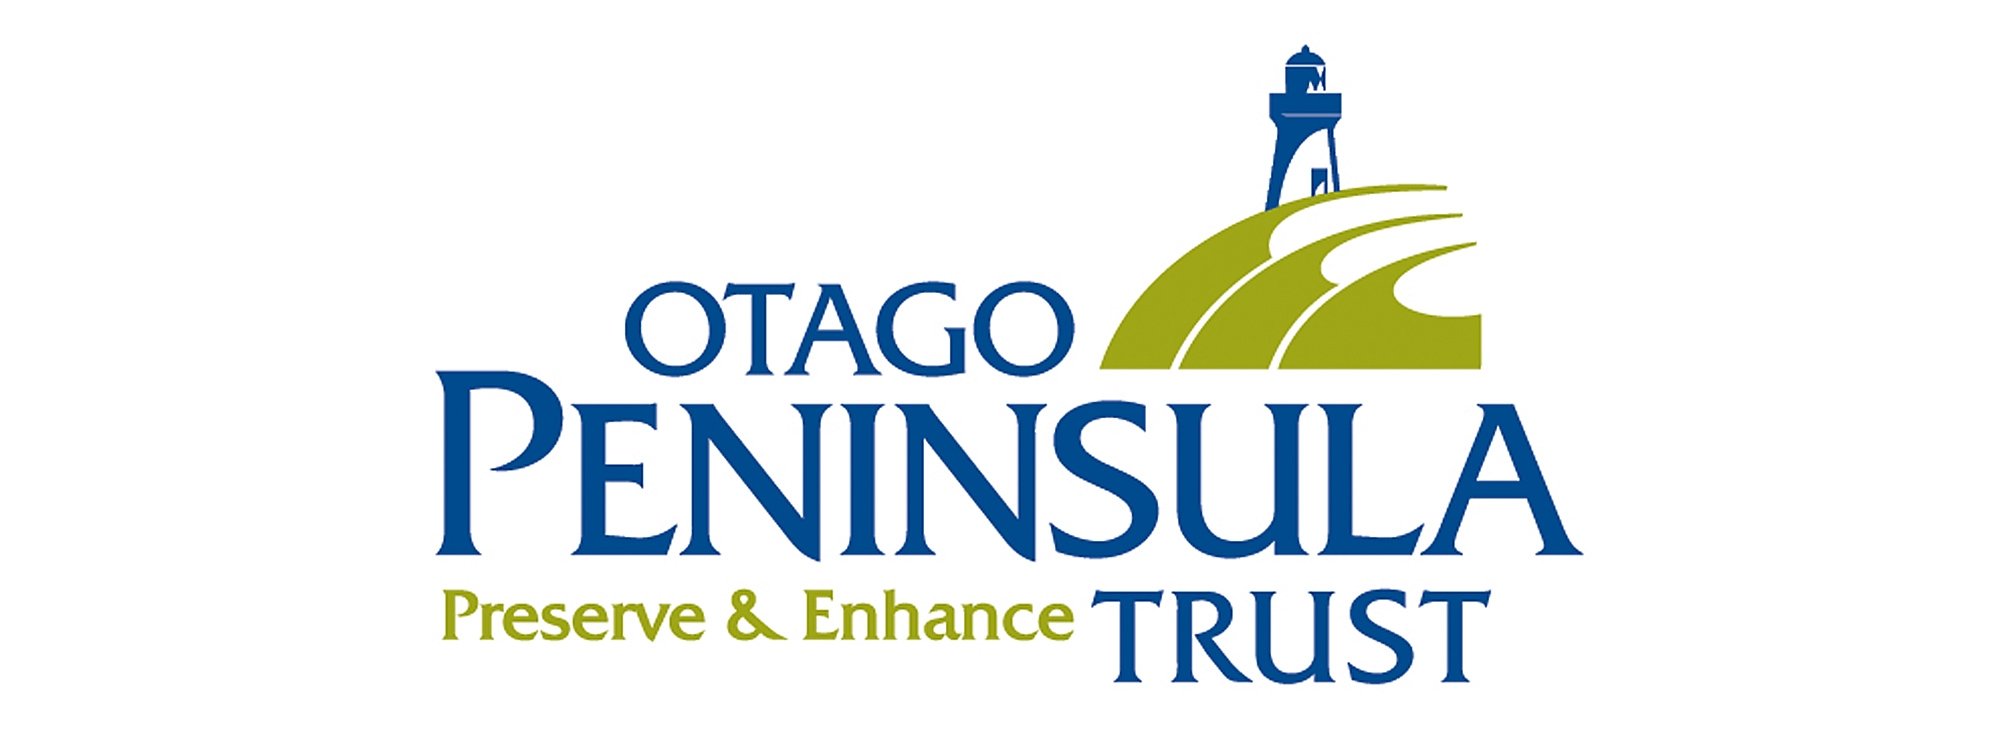 Otago Peninsula Trust logo.jpeg